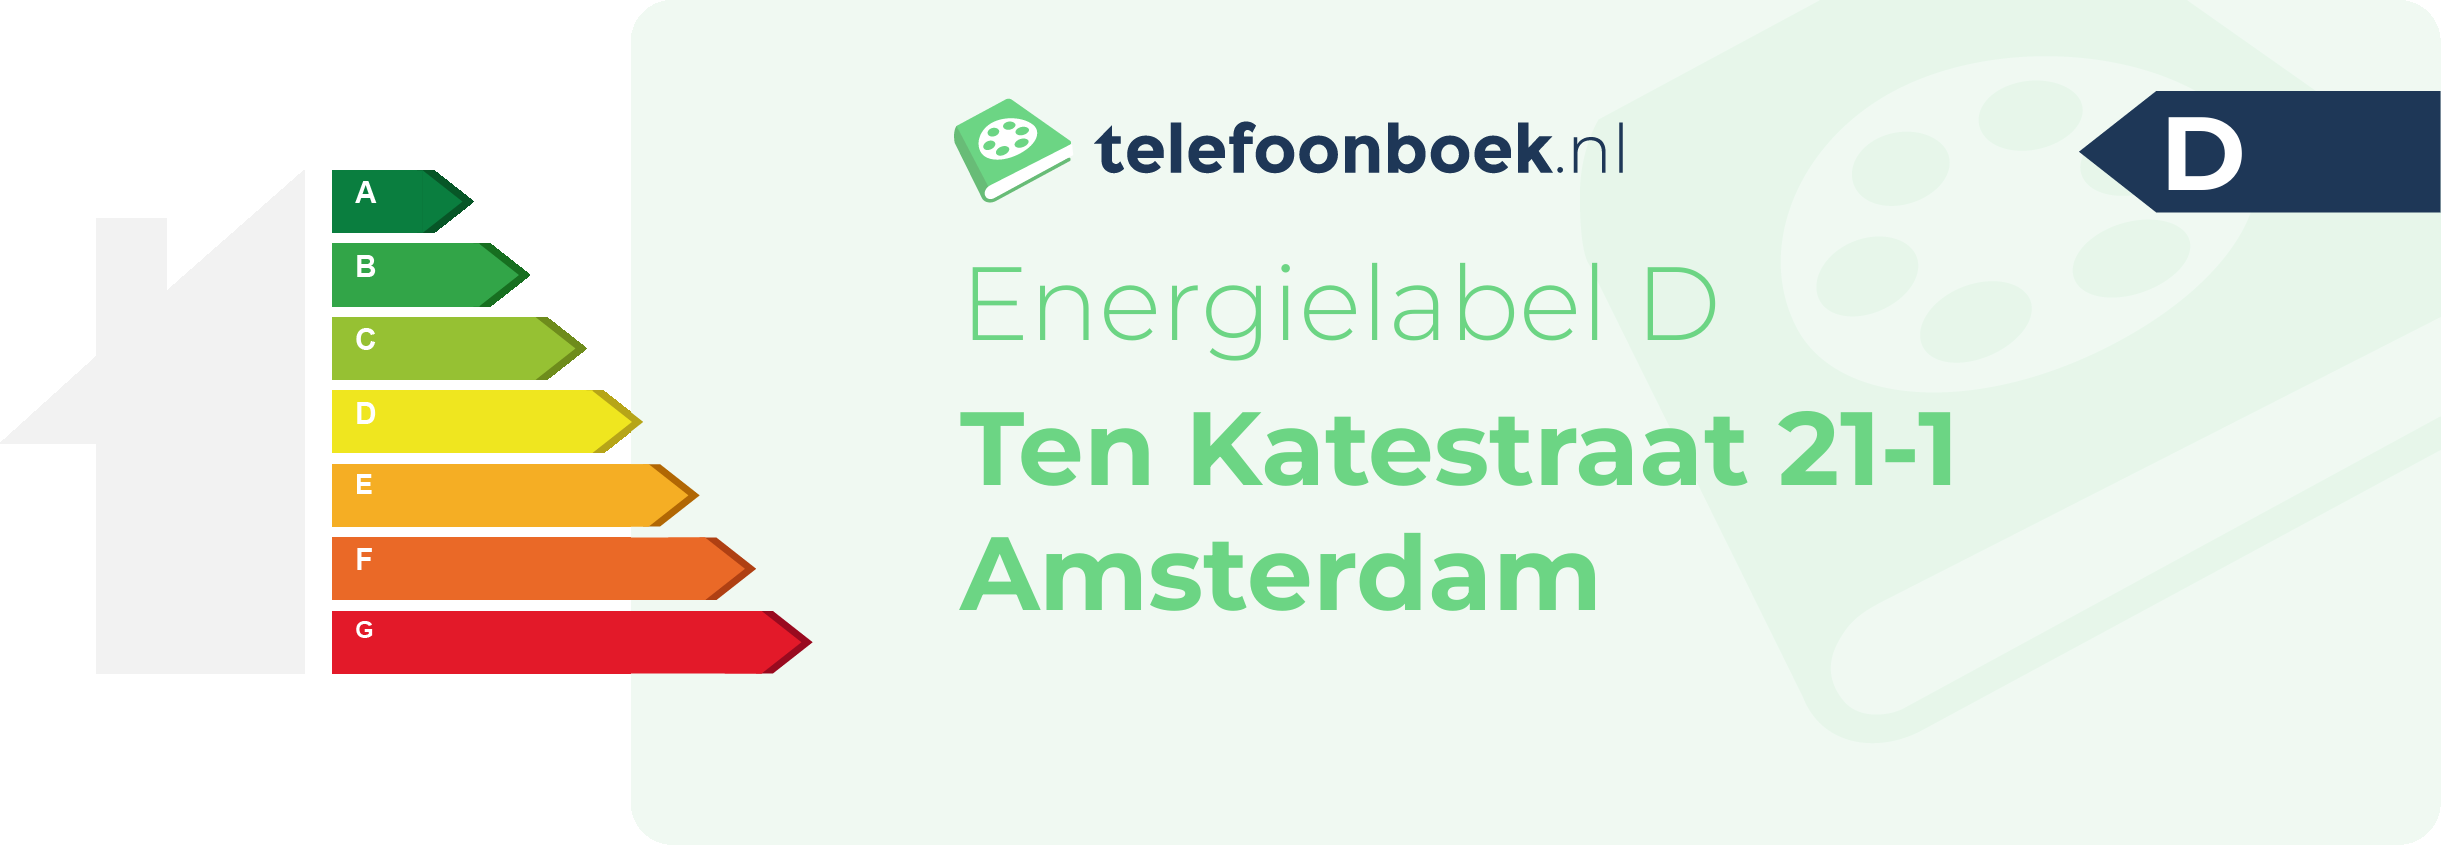 Energielabel Ten Katestraat 21-1 Amsterdam